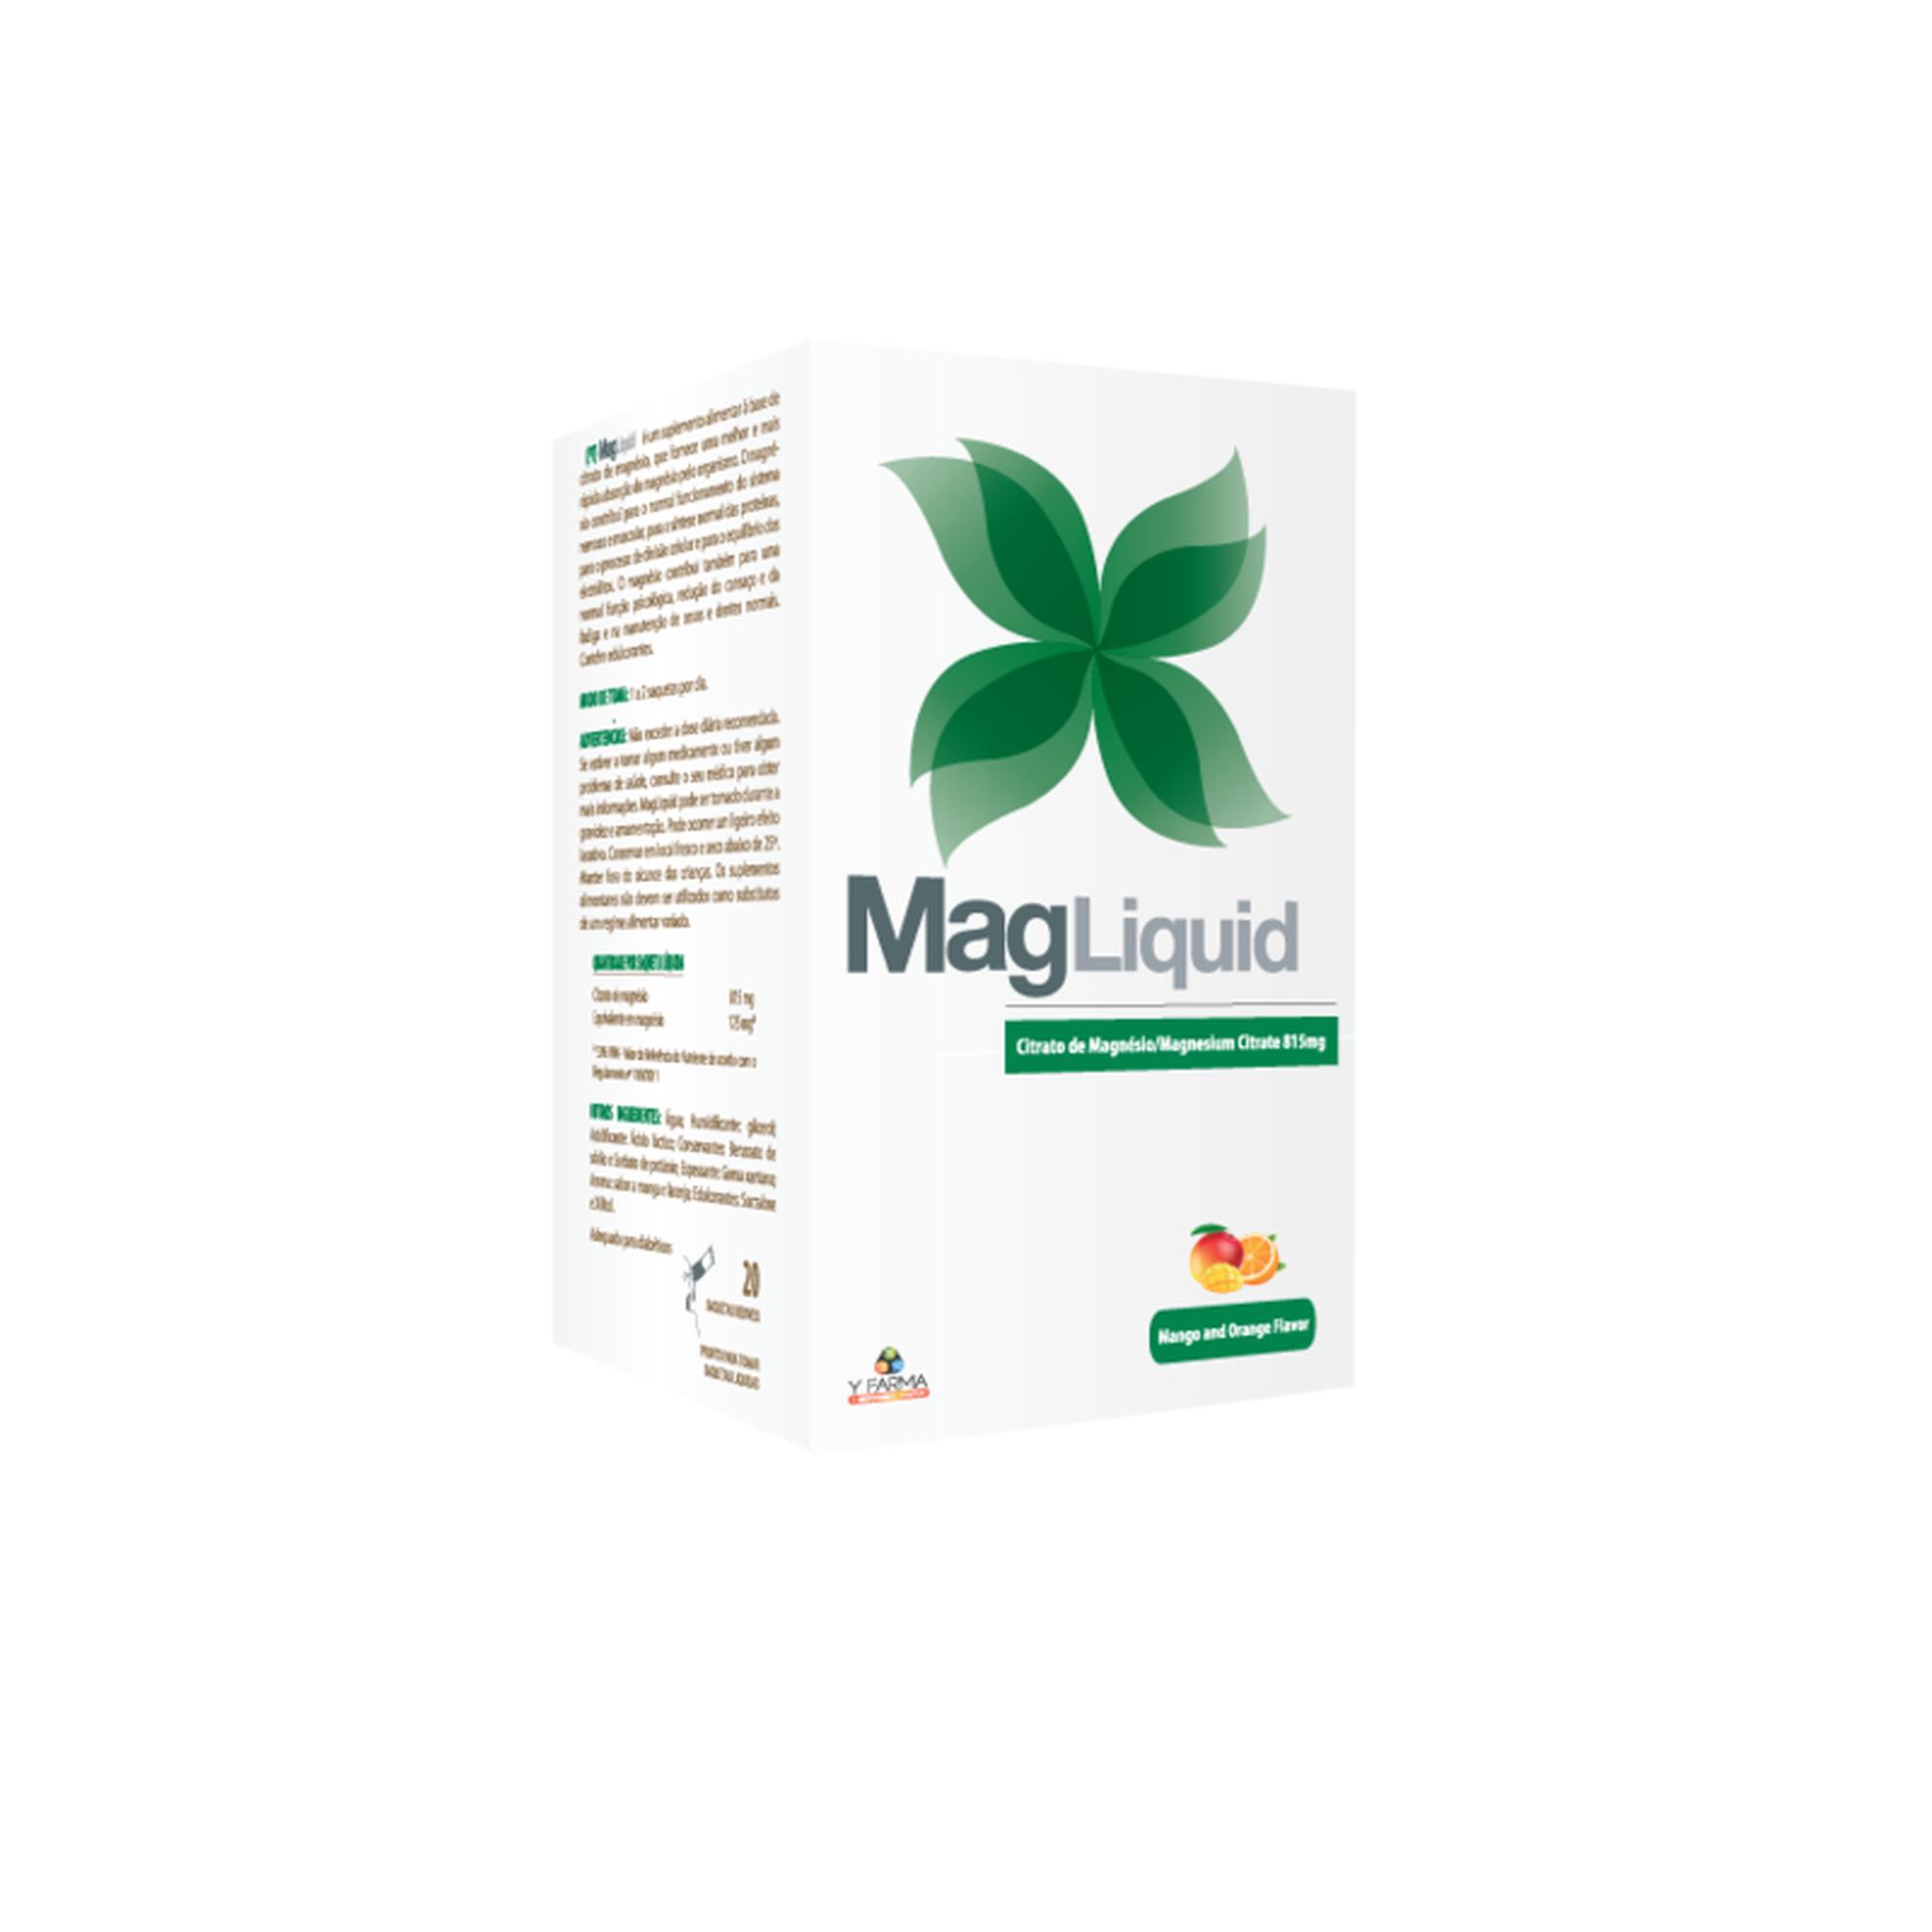 MAG FLUID - Magnesio